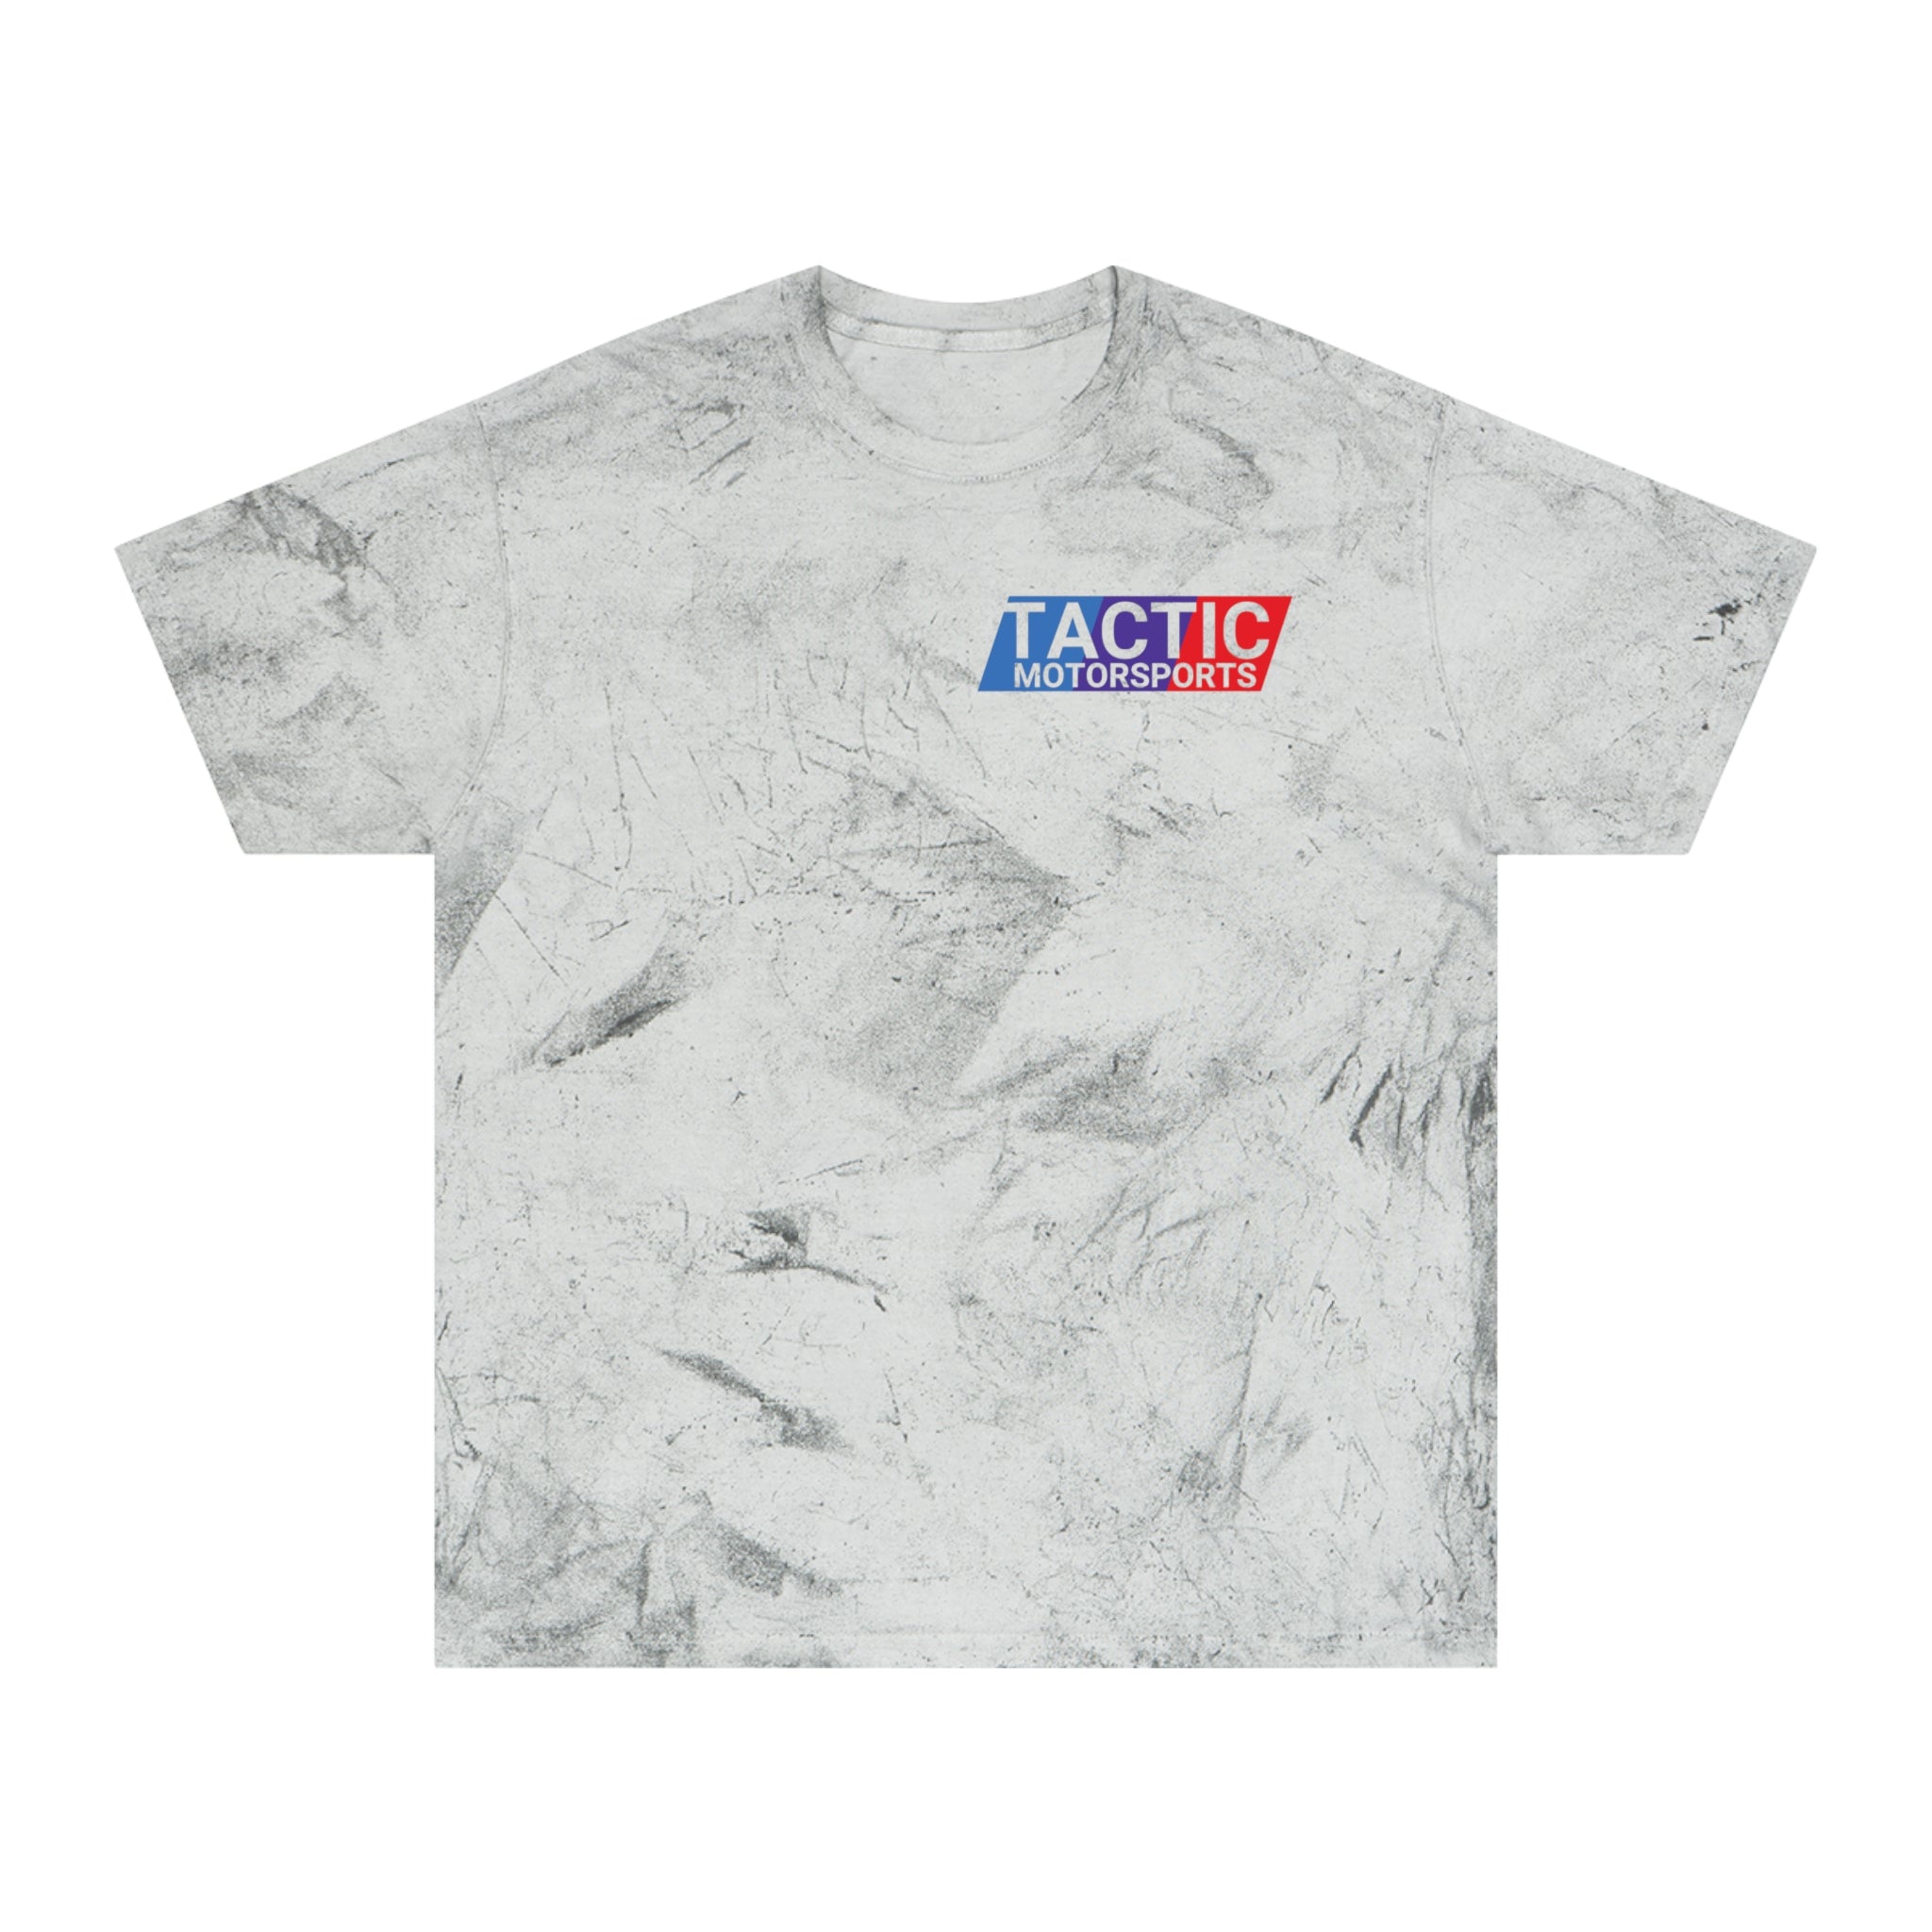 Camiseta con lavado de piedra Tactic Motorsports